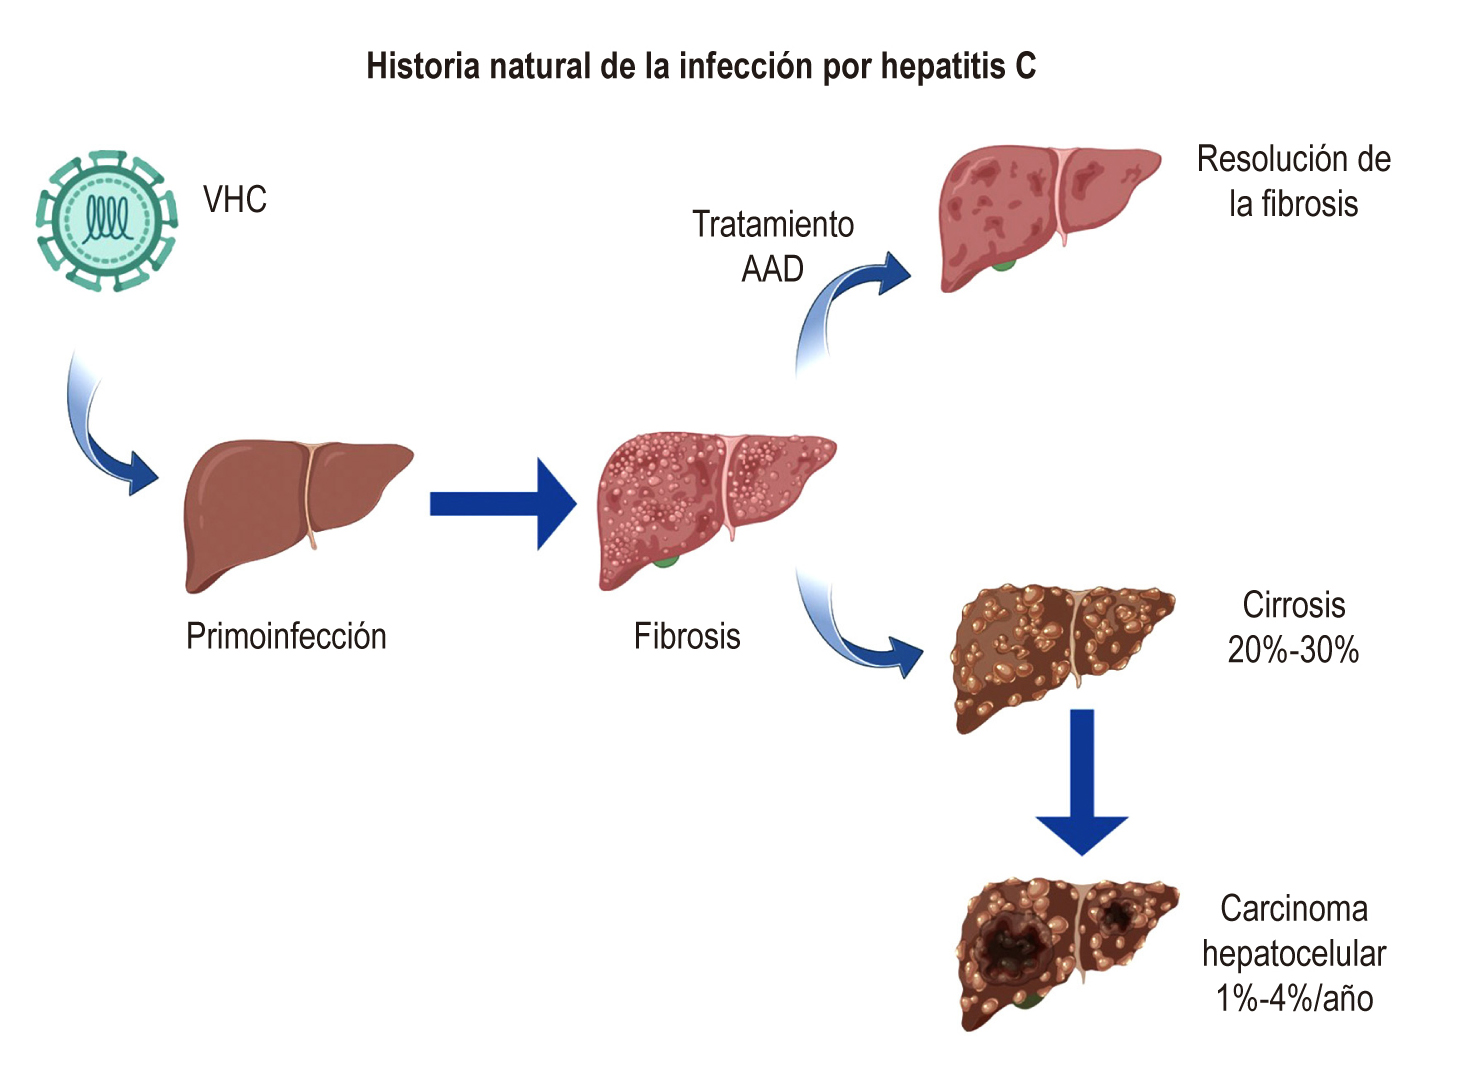 Figura 1. Historia natural de la infección por hepatitis C. AAD: antivirales de acción directa. Adaptado de Lingala y colaboradores